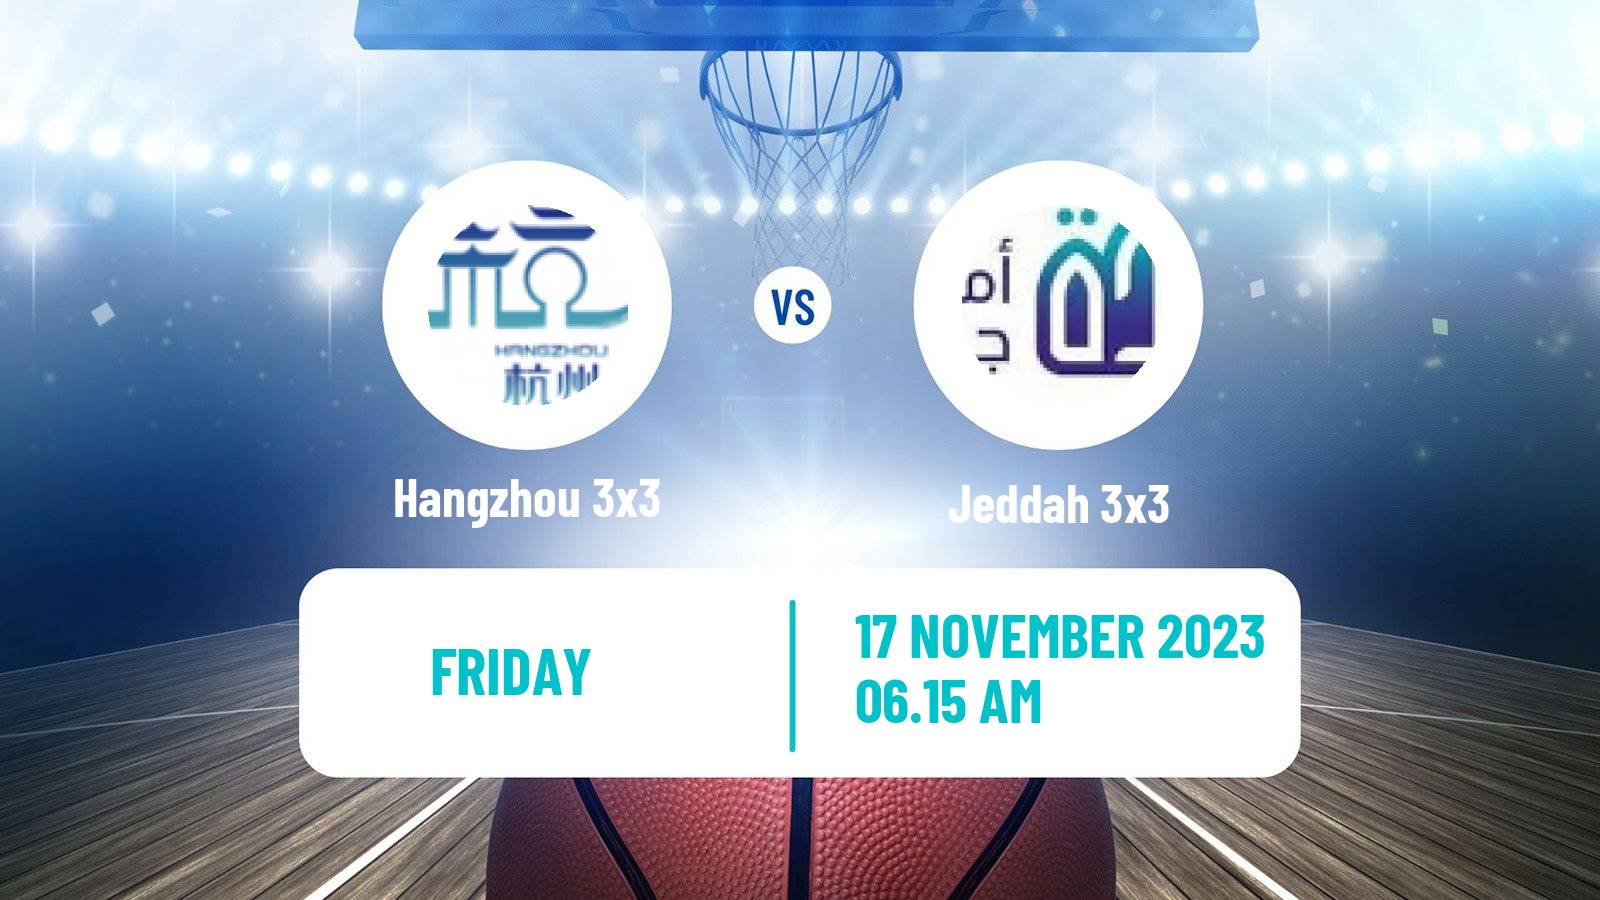 Basketball World Tour Manama 3x3 Hangzhou 3x3 - Jeddah 3x3